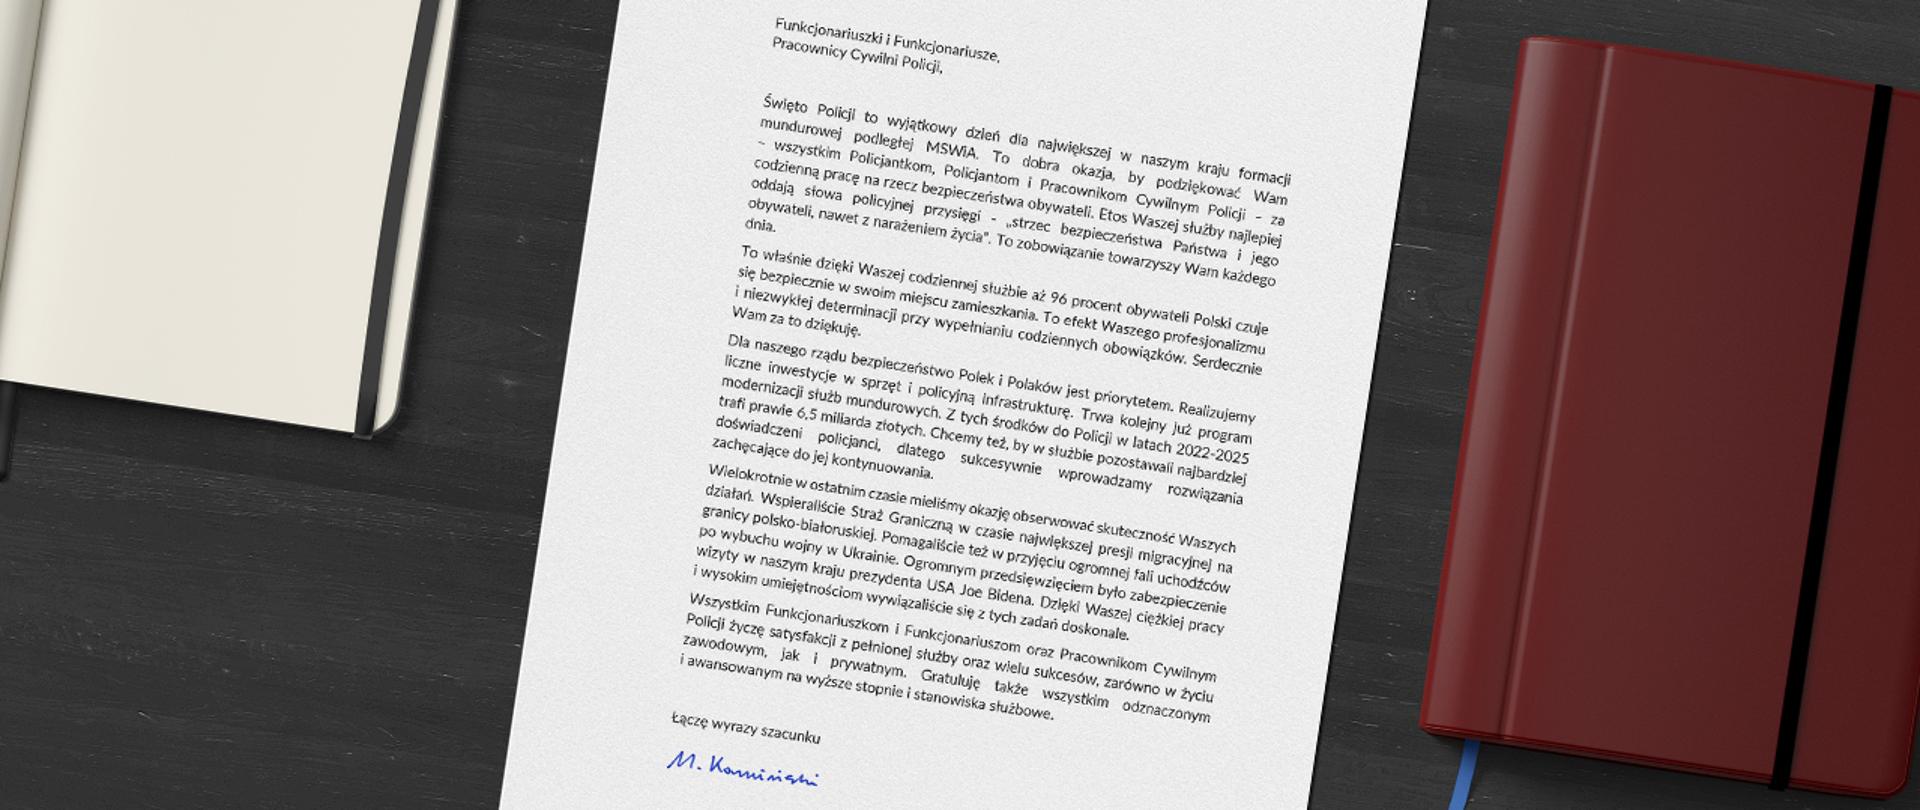 Treść listu ministra Mariusza Kamińskiego do Funkcjonariuszek i Funkcjonariuszy oraz Pracowników Cywilnych Policji.